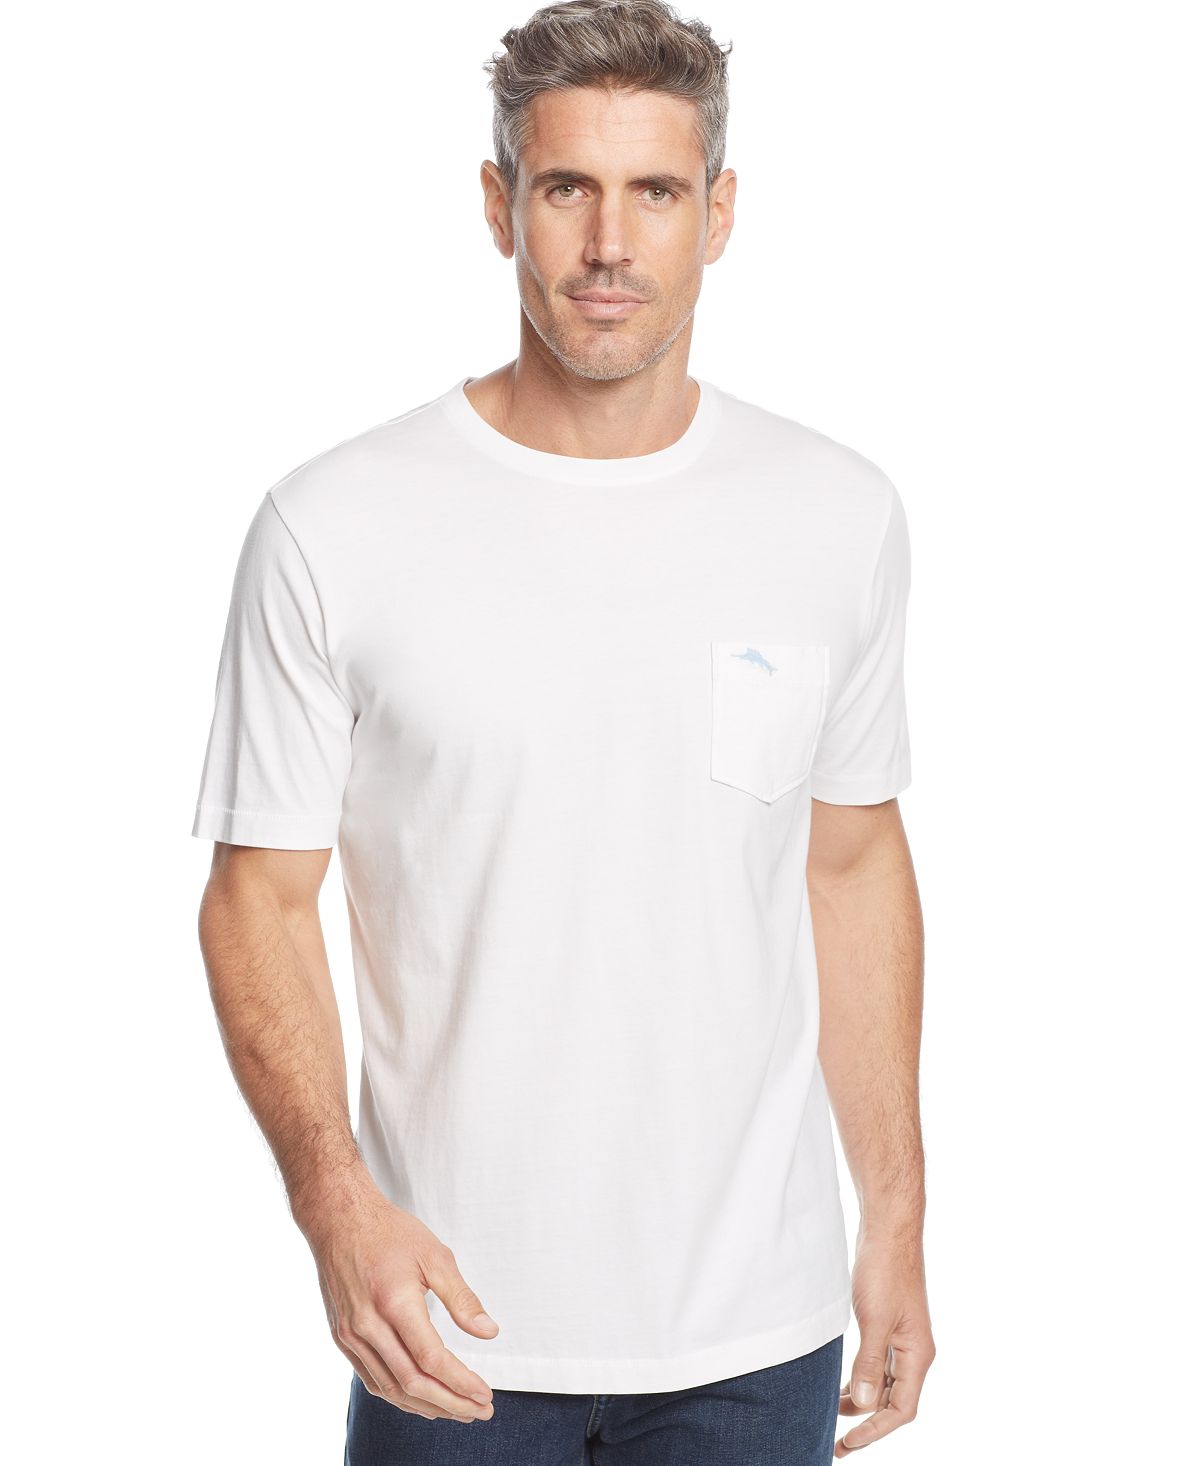 Мужская футболка bali sky с круглым вырезом и короткими рукавами Tommy Bahama, белый мужская футболка bali sky с круглым вырезом и короткими рукавами tommy bahama мульти